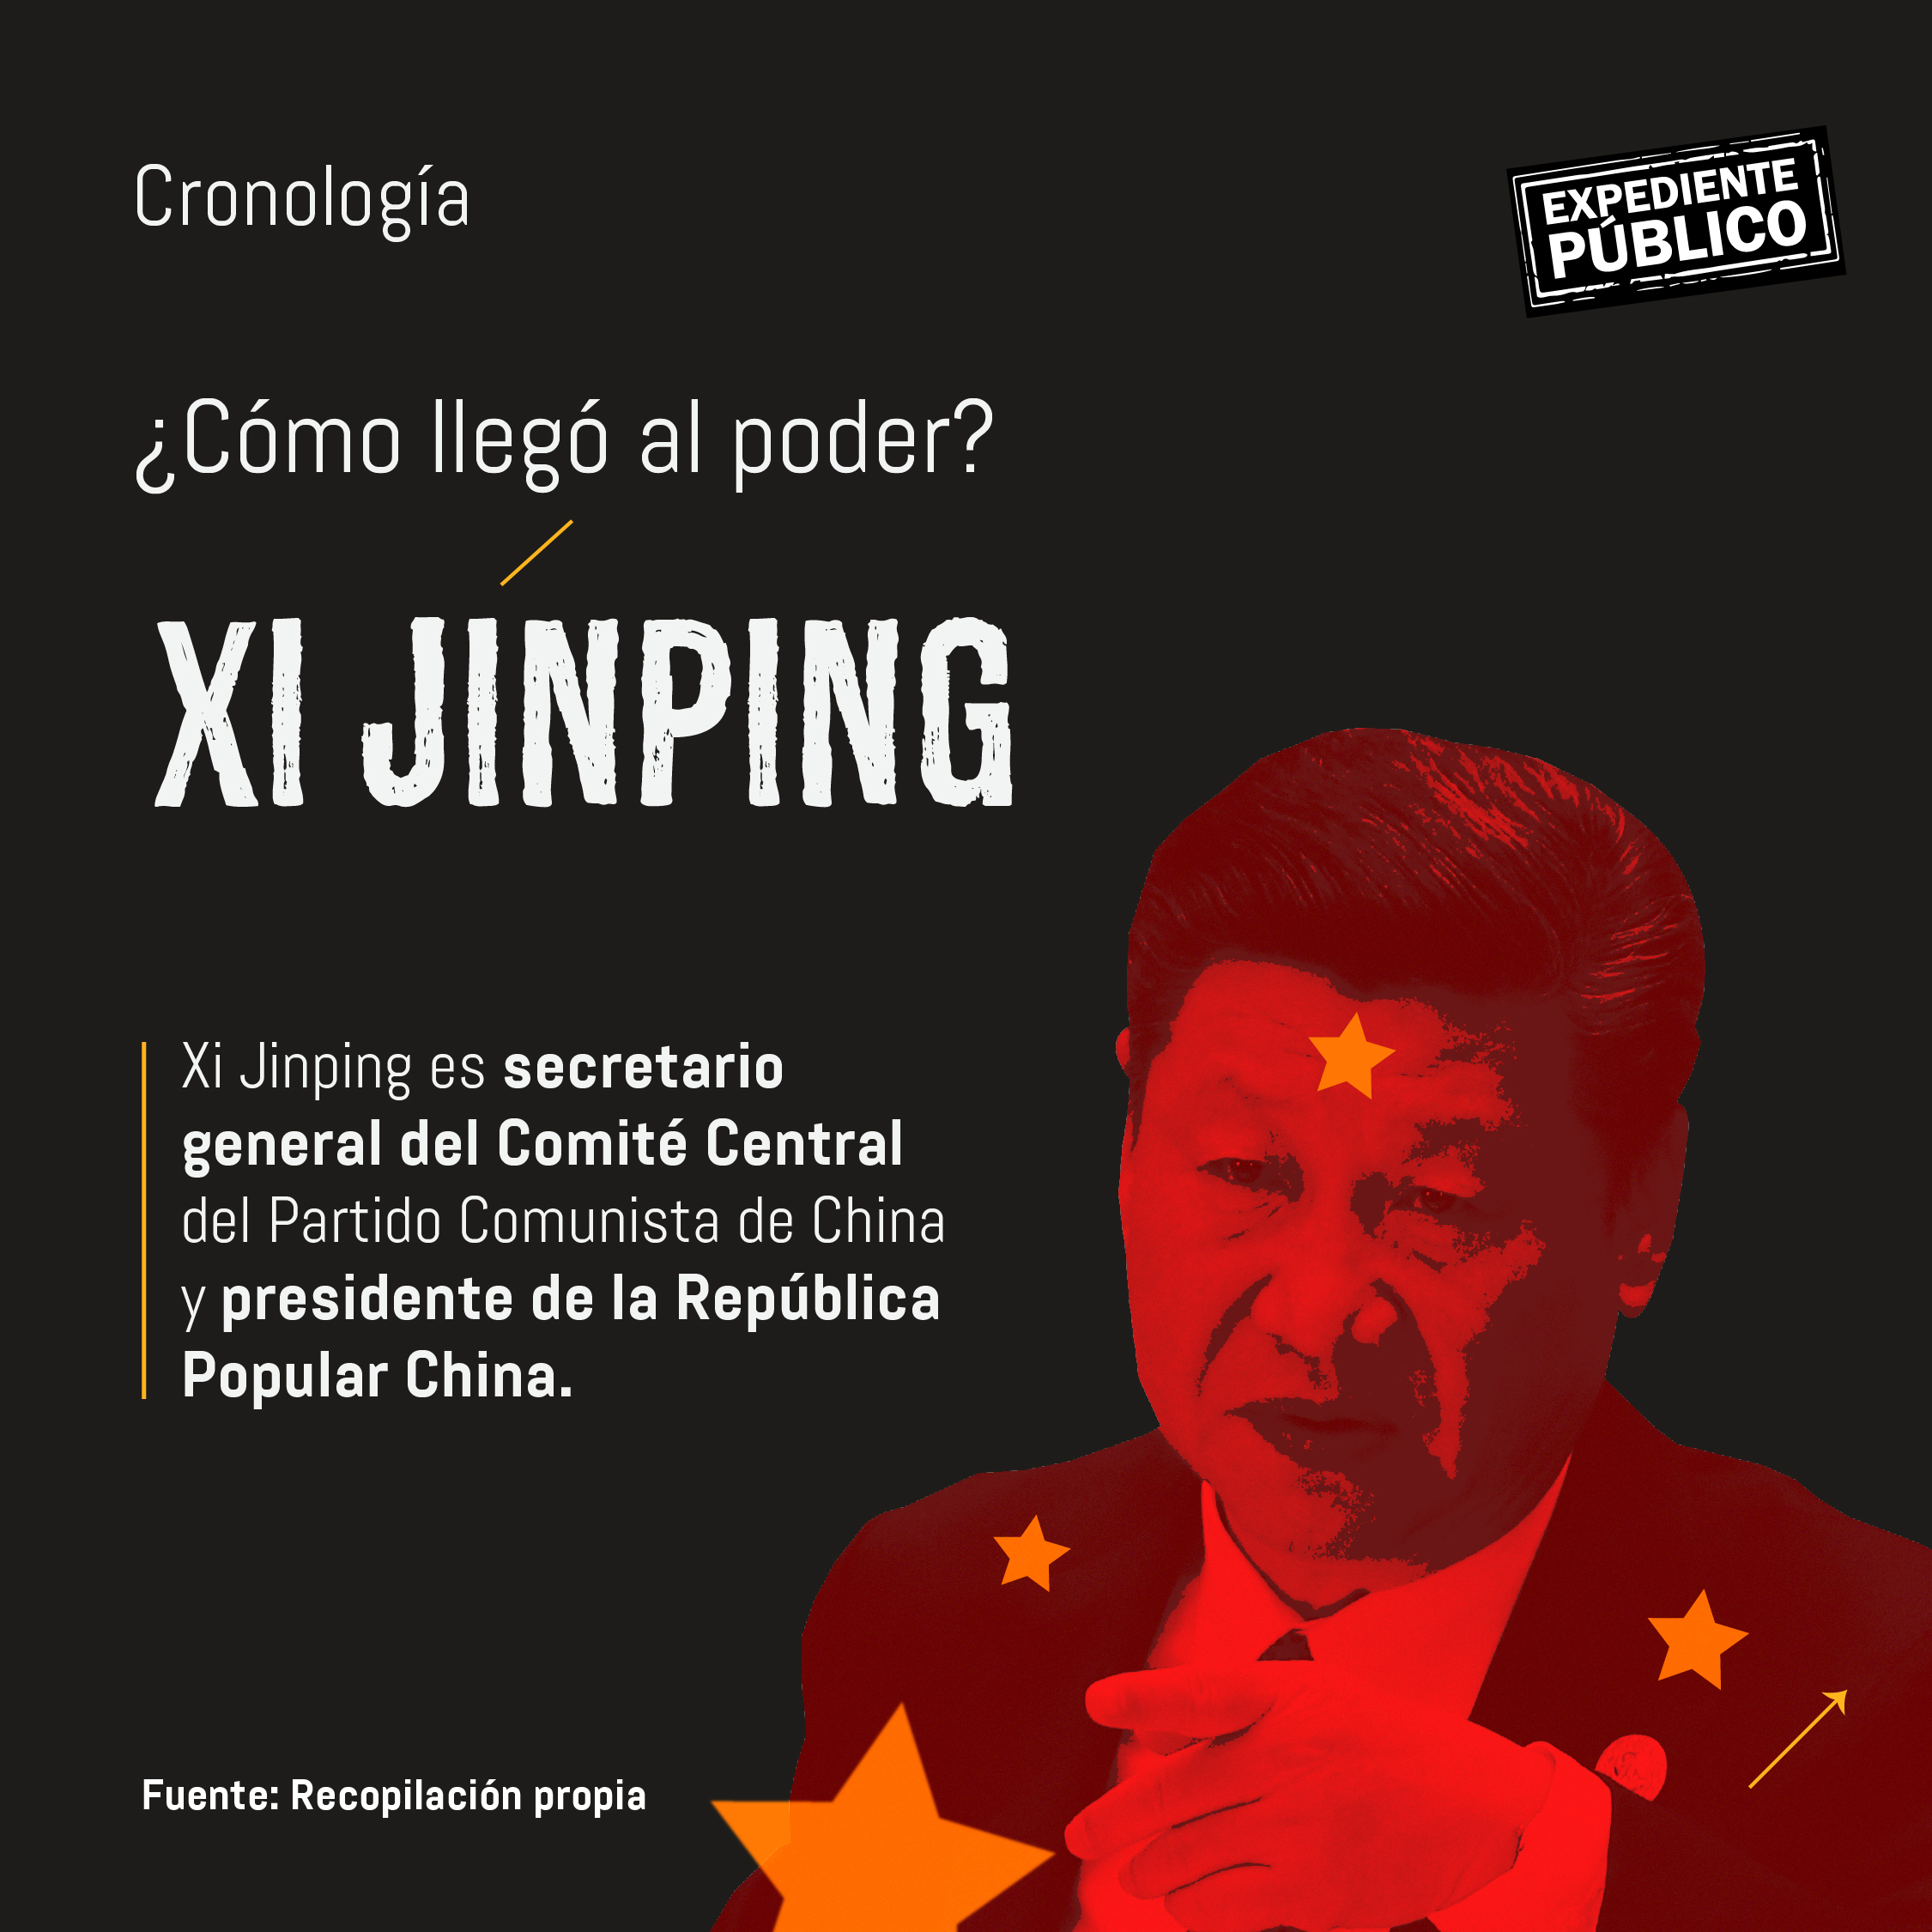 Radiografía de Xi Jinping, el nuevo emperador de China Expediente Público